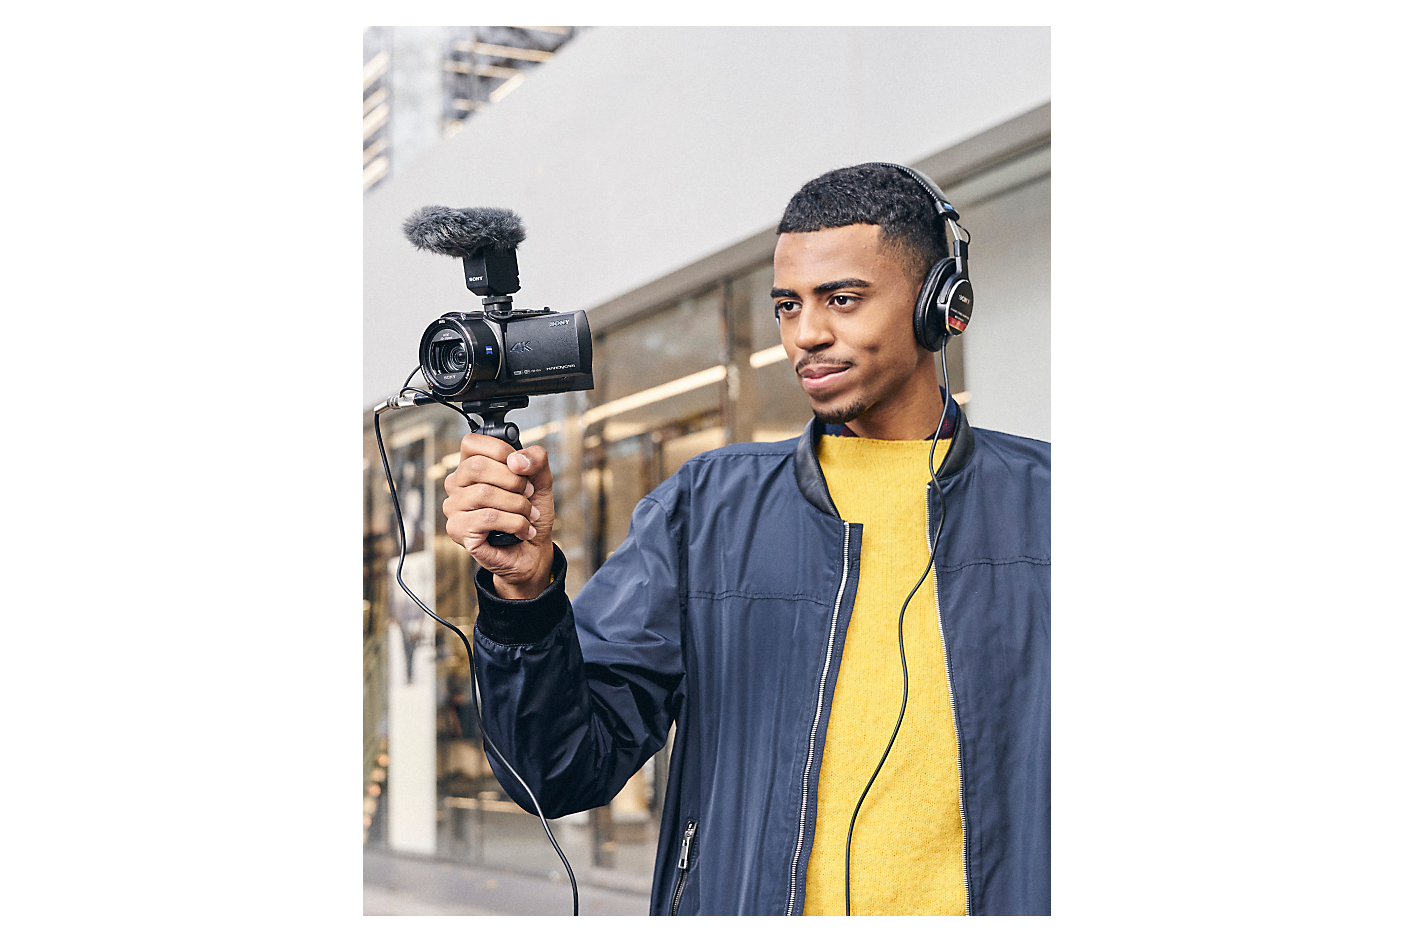 Muž so slúchadlami držiaci fotoaparát od spoločnosti Sony s pripojeným držadlom na snímanie a mikrofónom.